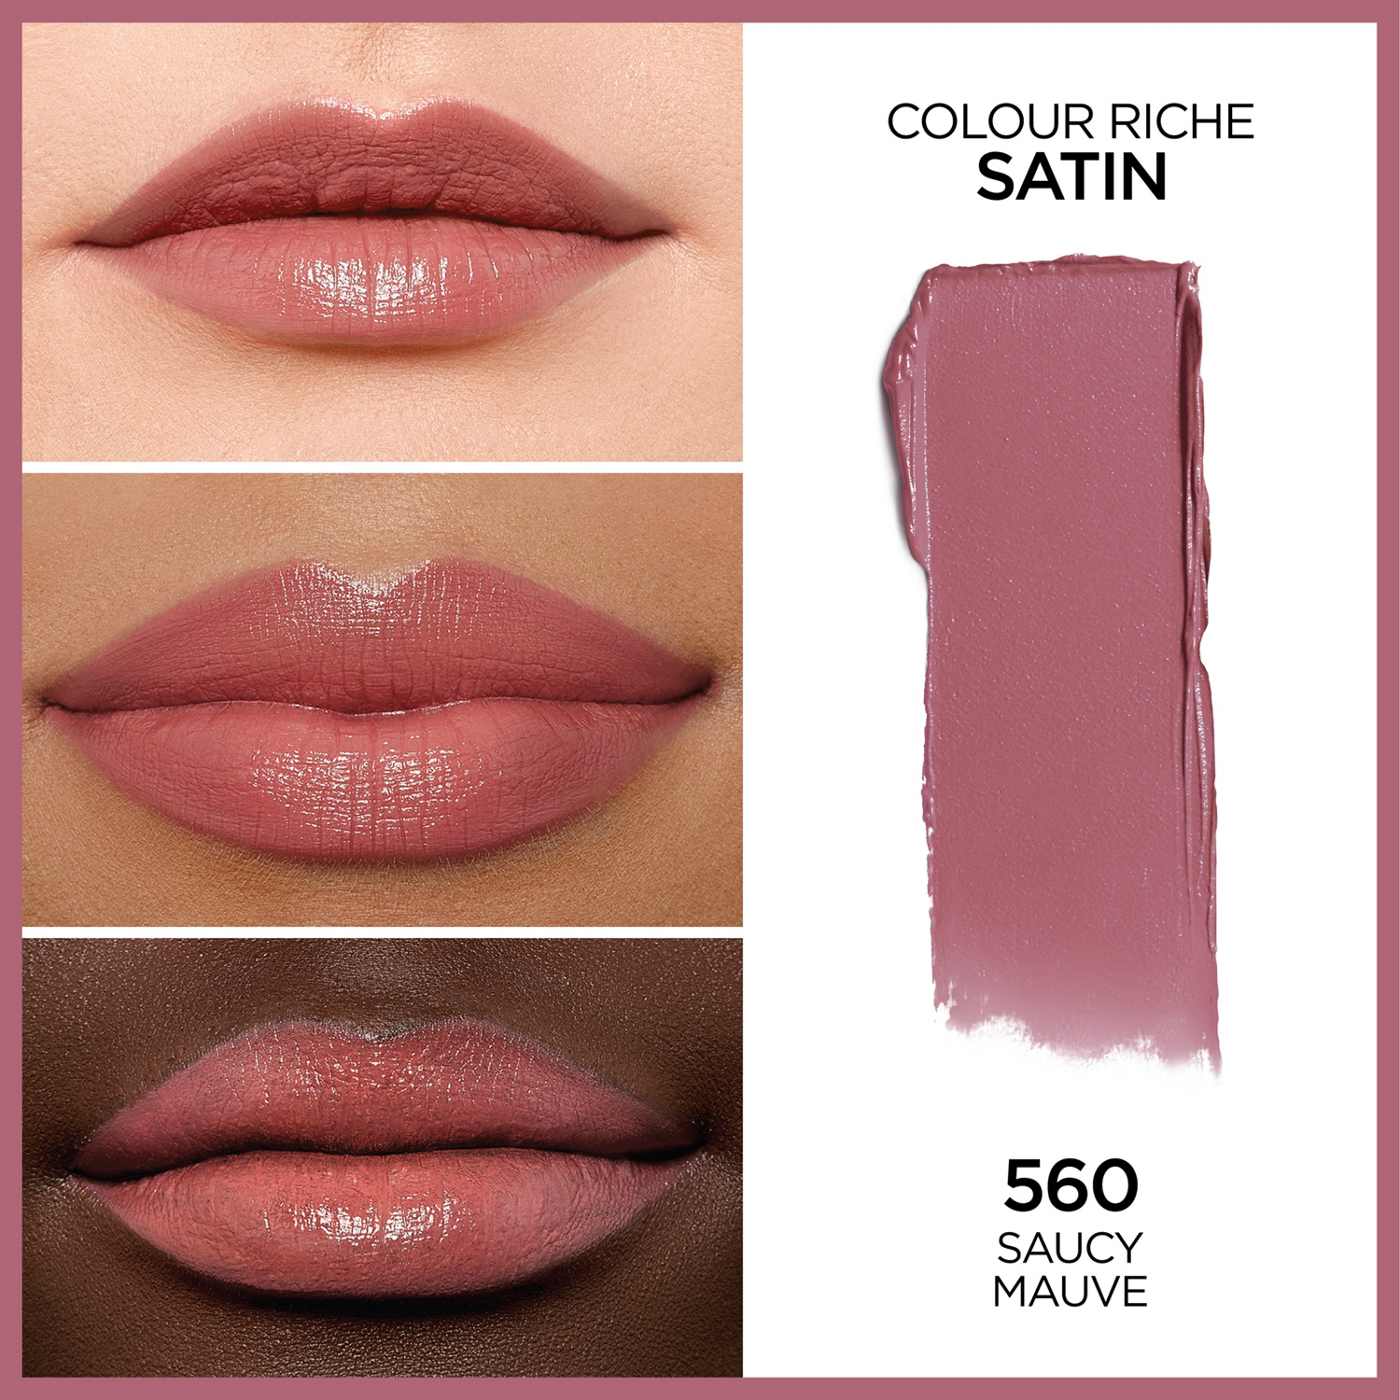 L'Oréal Paris Colour Riche Original Satin Lipstick - Saucy Mauve; image 4 of 5